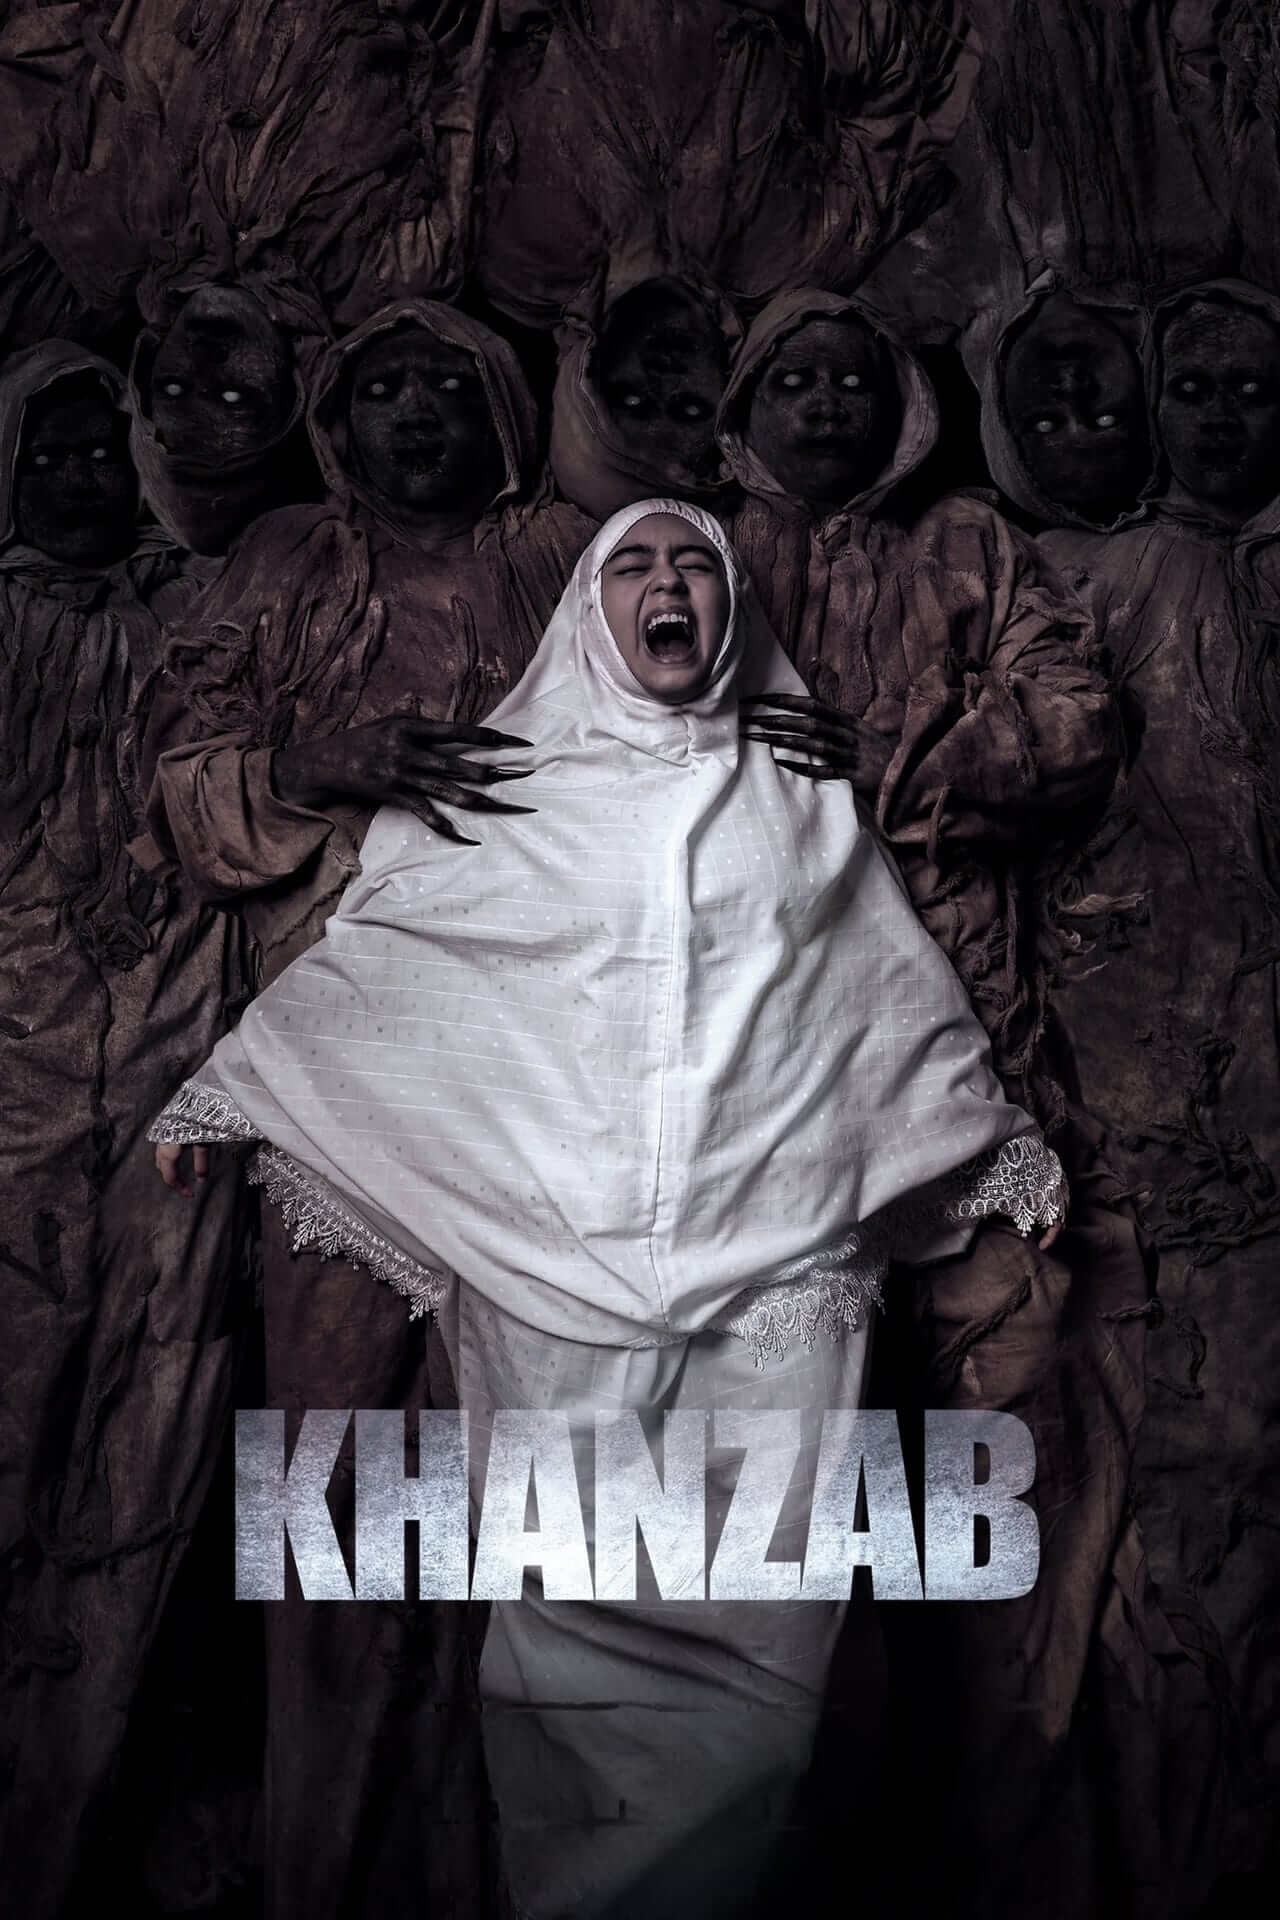 دانلود فیلم خنجاب Khanzab